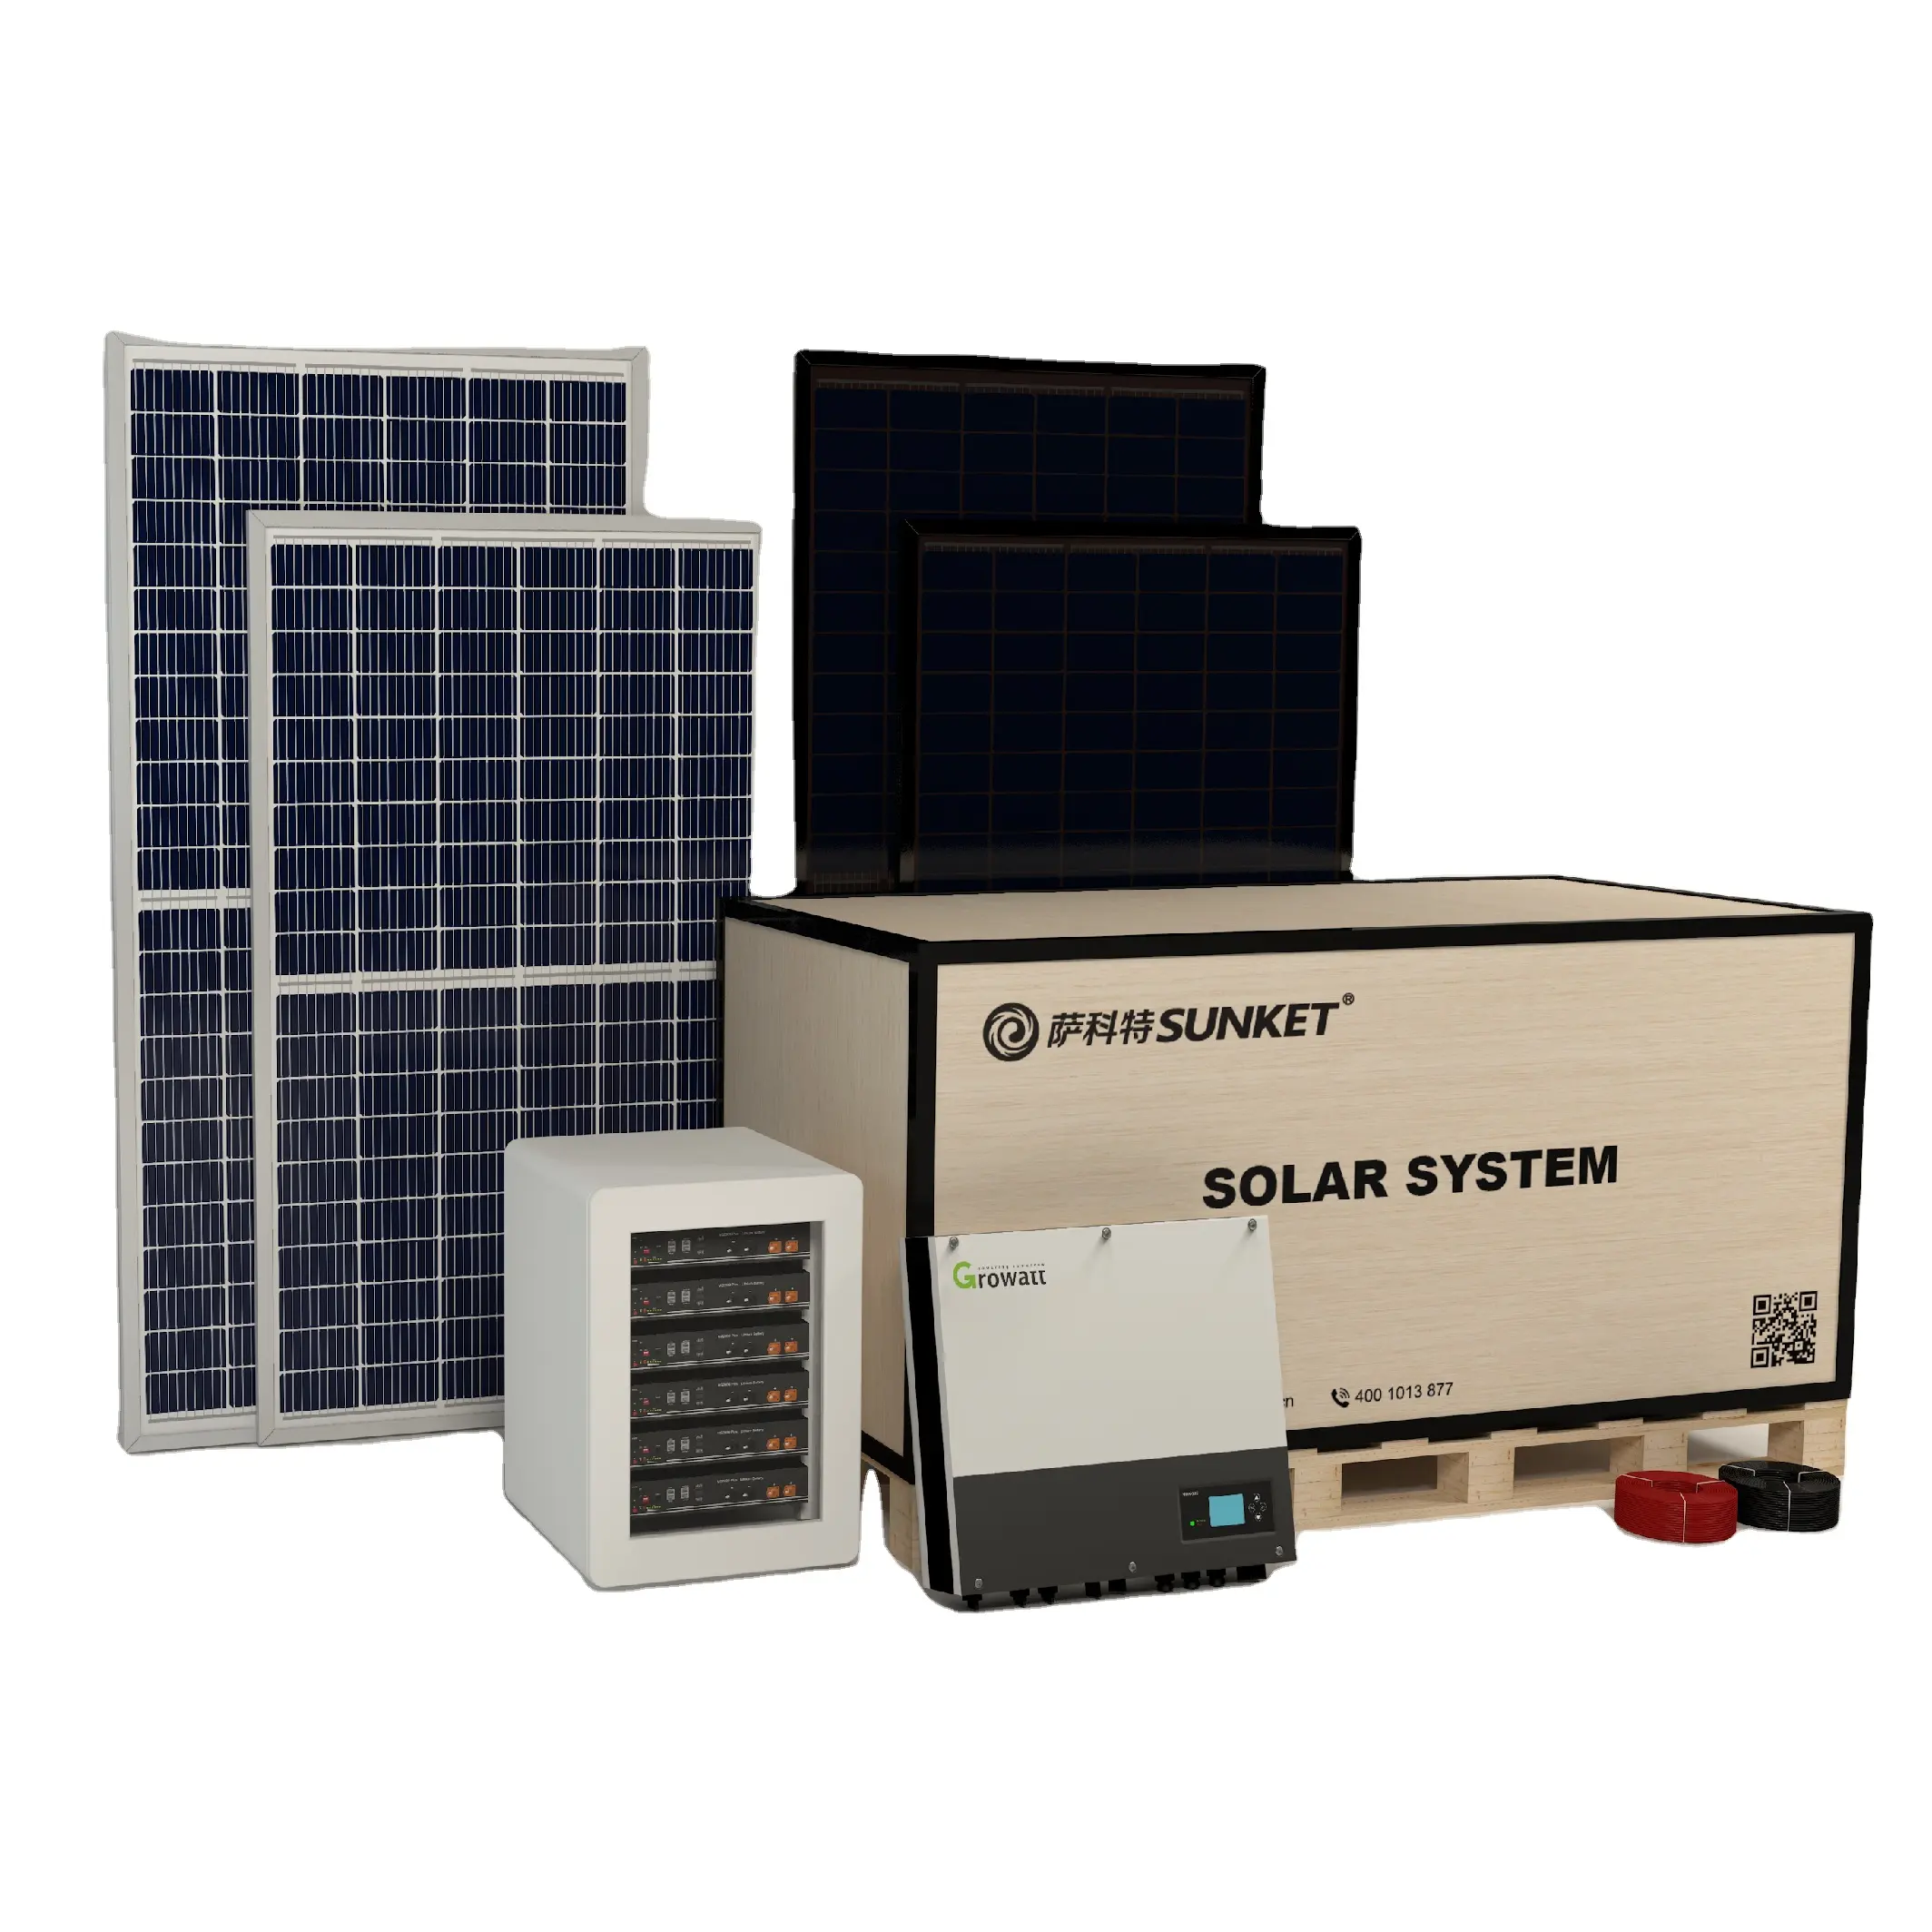 フラット接地商用産業用OPC太陽光発電所プロジェクト100kw500kw 1.5MW 3MW 3フェーズオングリッドソーラーパワーシステム